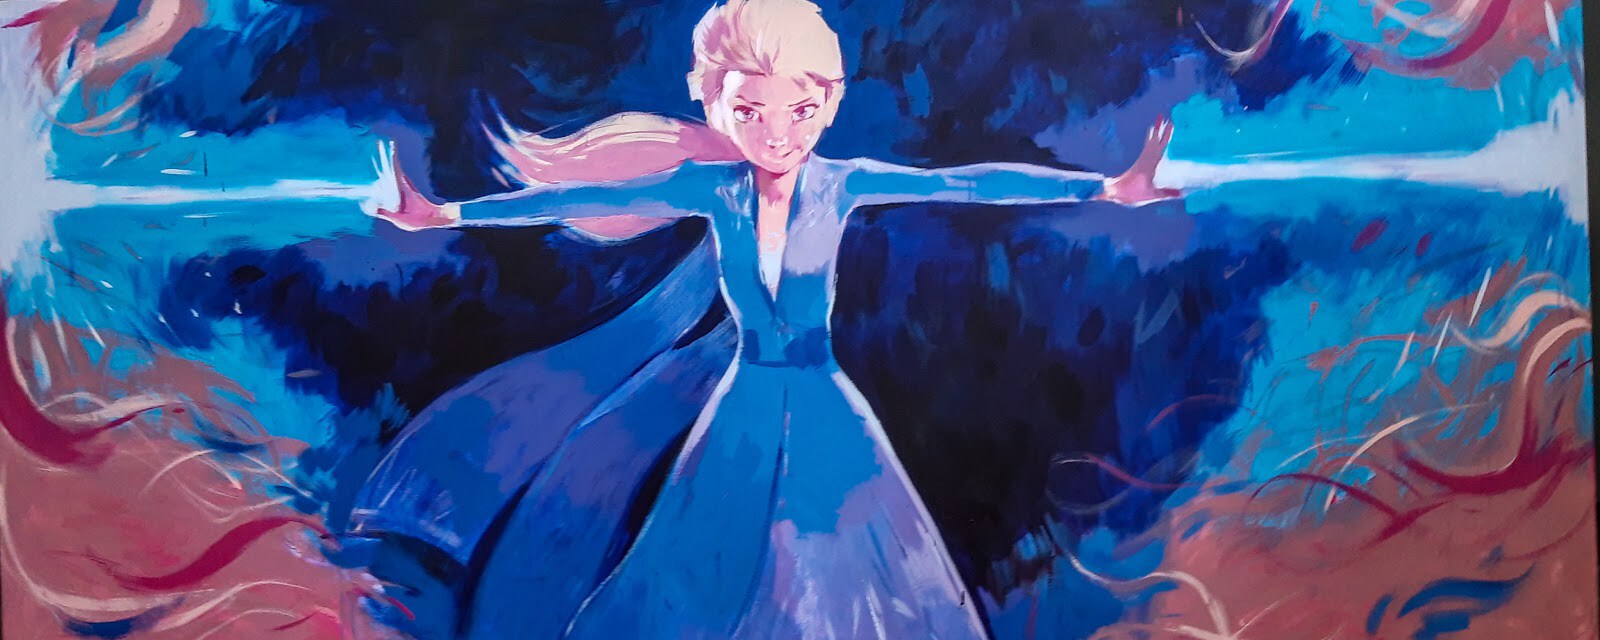 Las ilustraciones de Frozen 2 y Star Wars decoraron el stand de Disney en la Argentina Comic Con